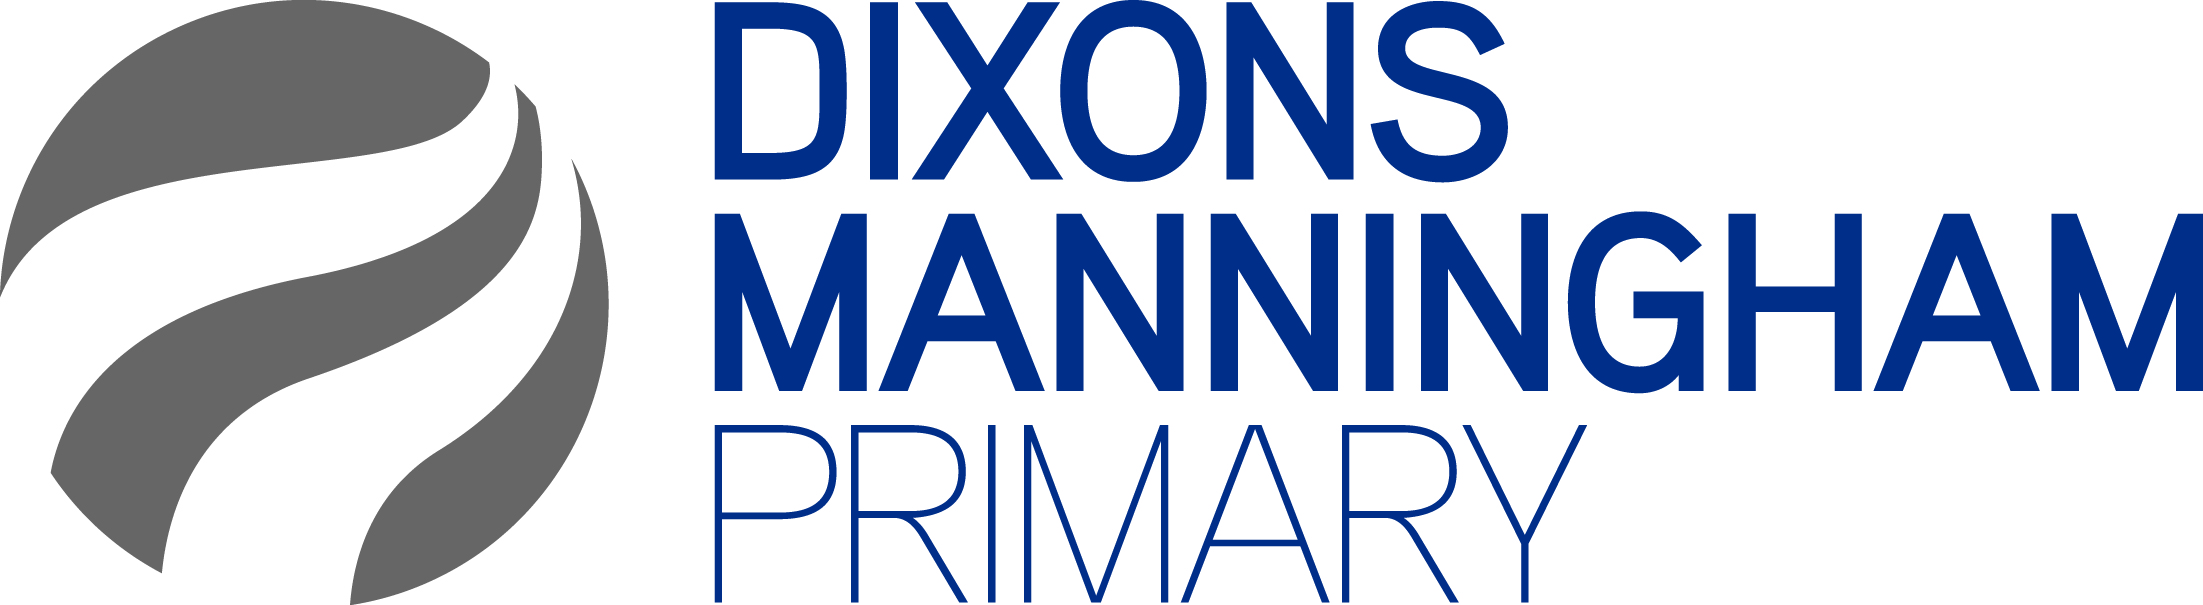 Dixons Manningham Academy logo